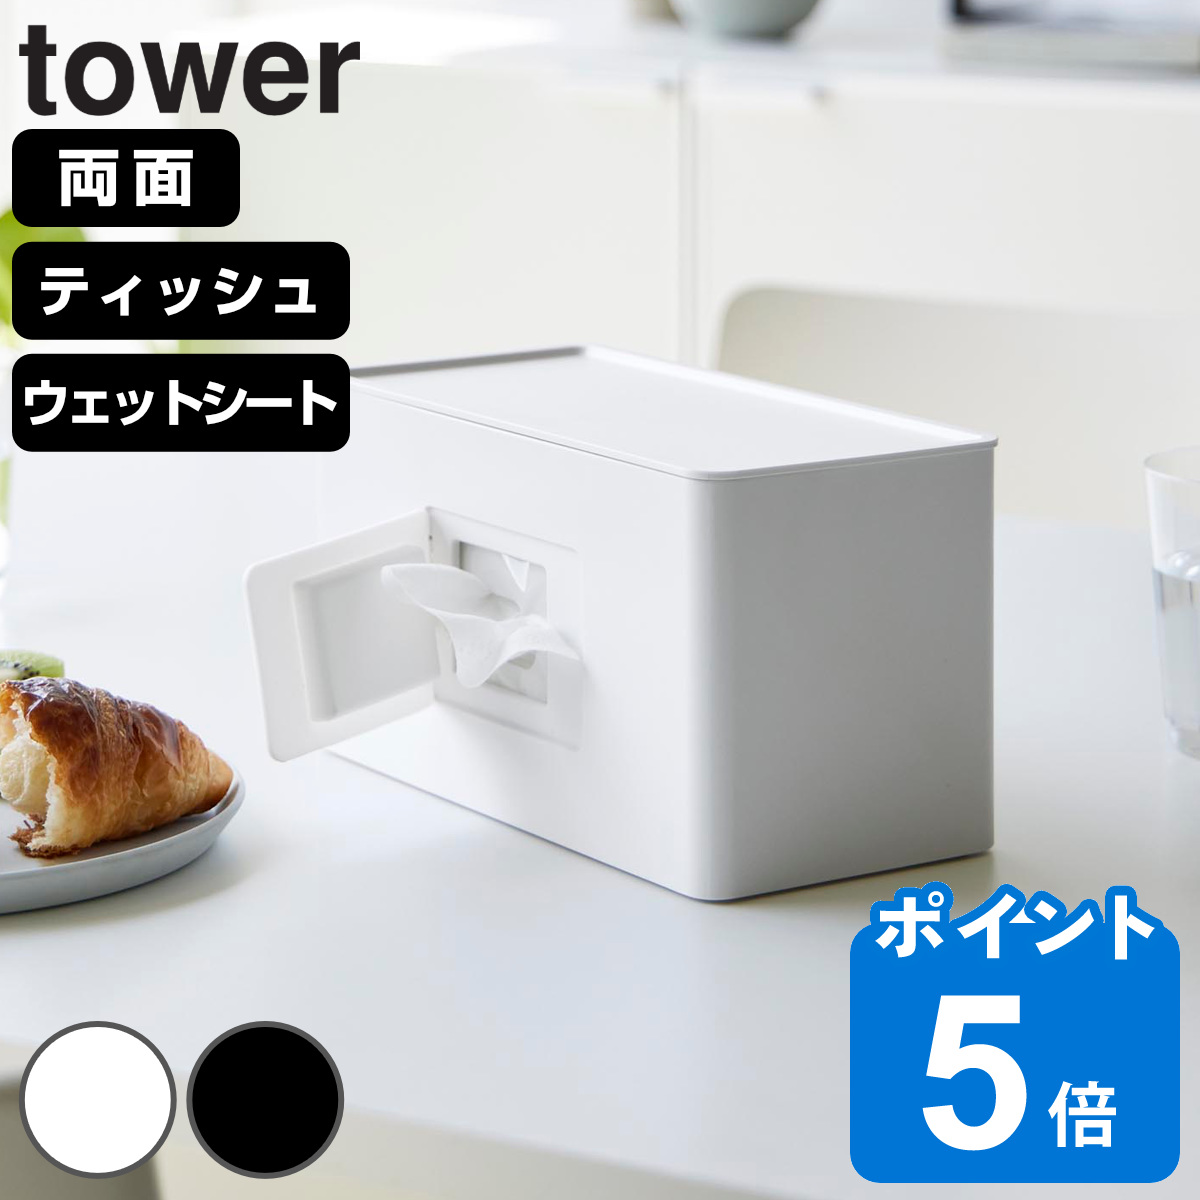 山崎実業 tower 両面コンパクトティッシュ＆ウェットシートケース タワー